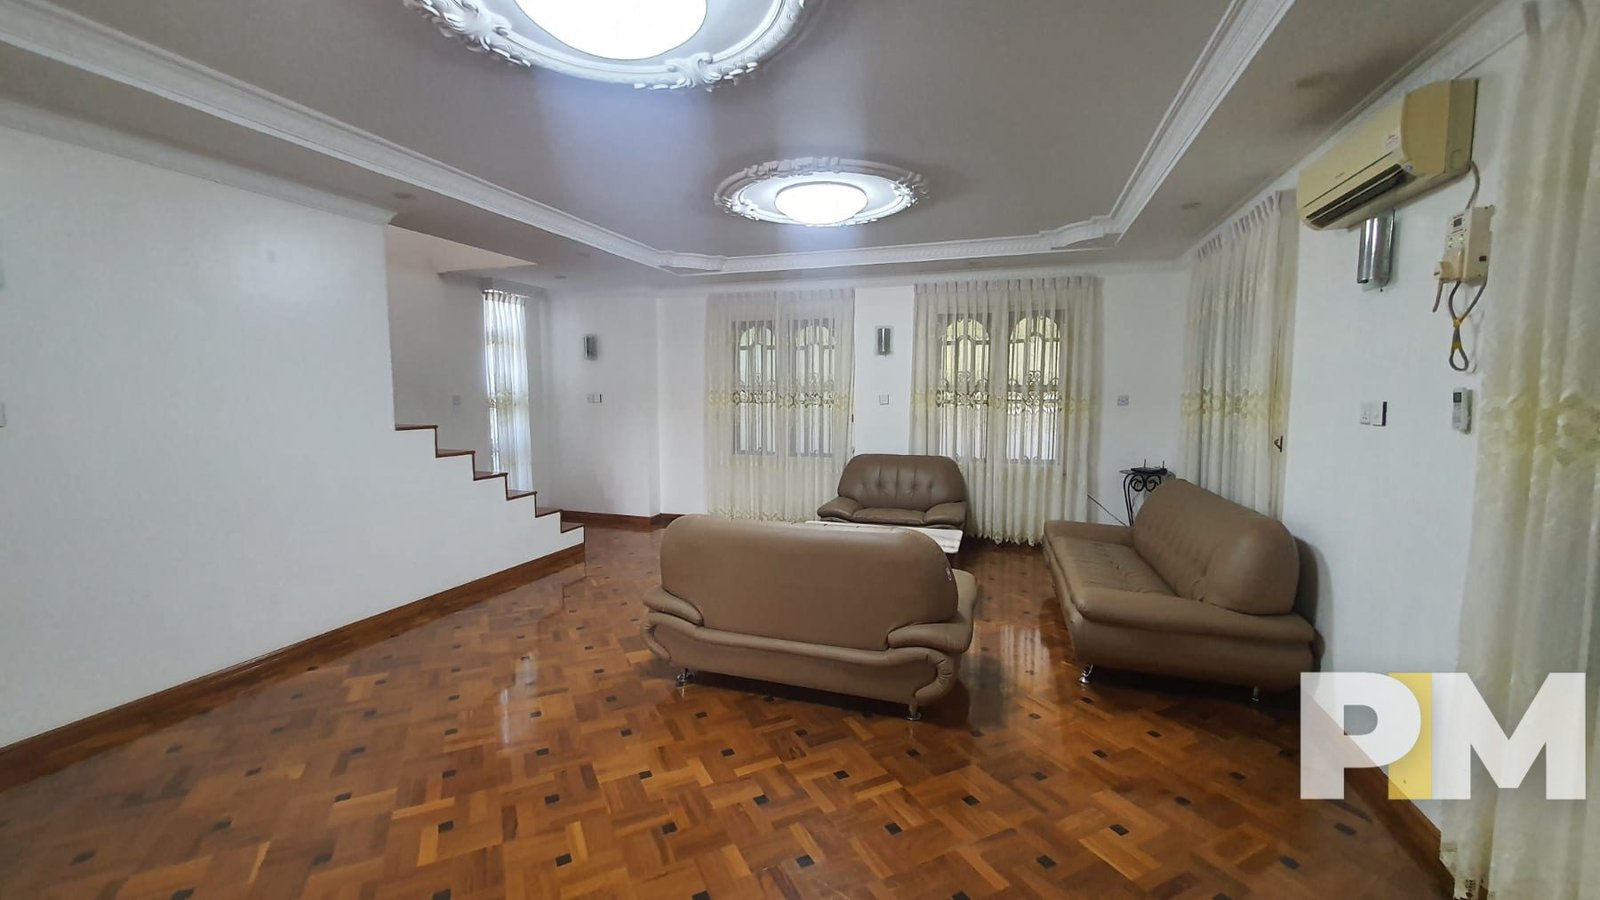 living room with sofa set - Yangon Property